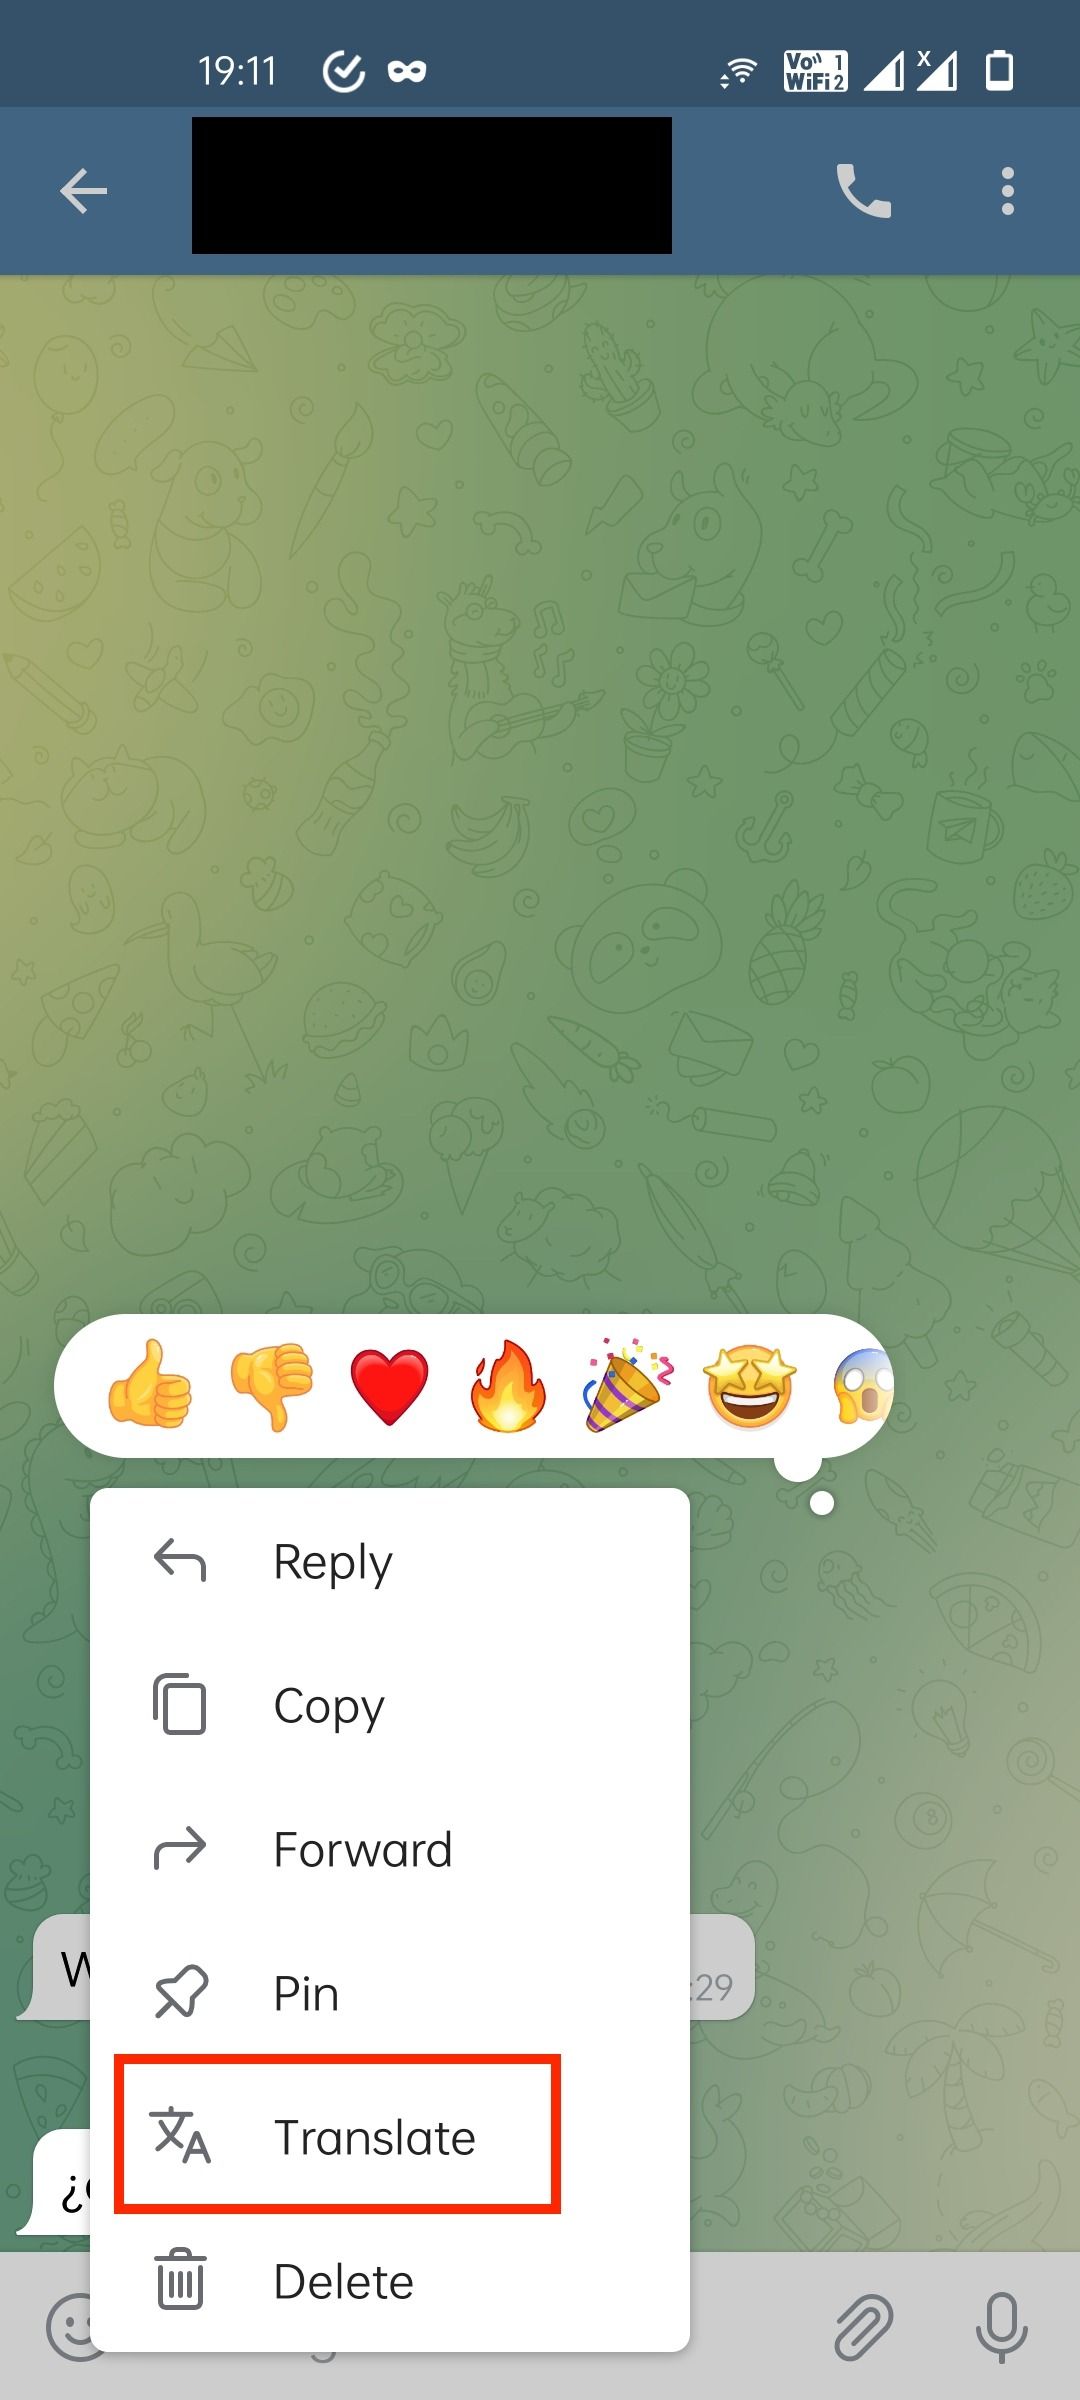 Botão de tradução do Telegram na janela de bate-papo